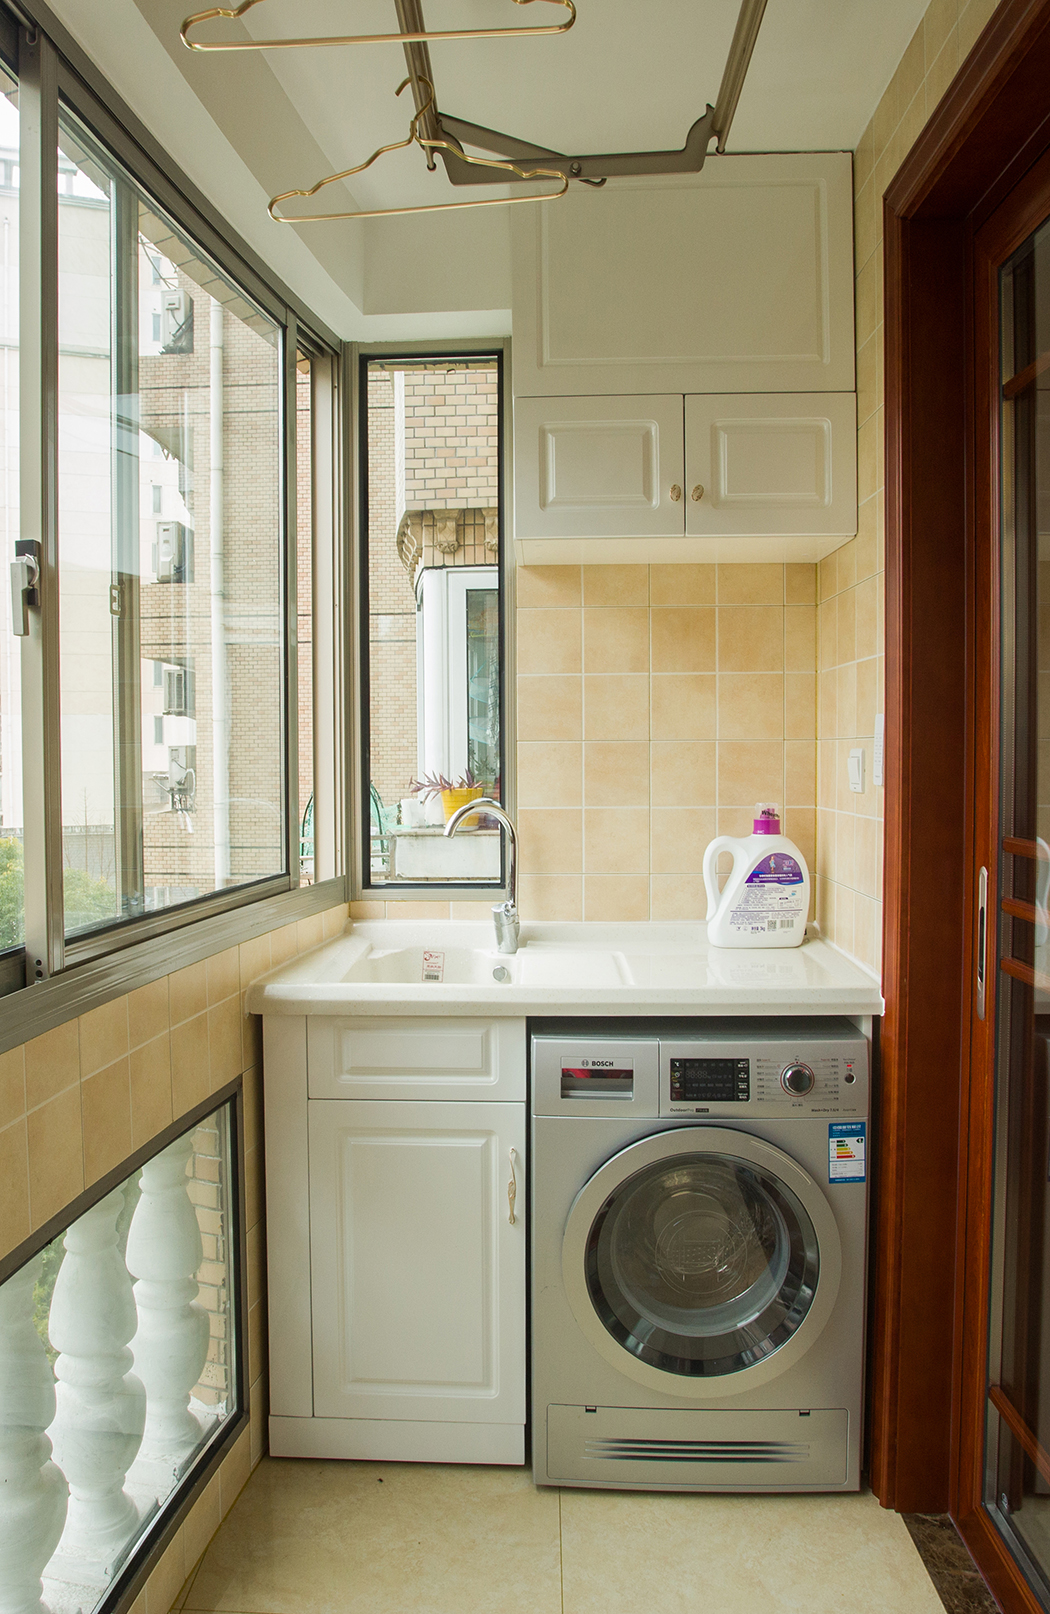 阳台的采光很好，主要用于家中的洗晒功能，也是采用欧式的设计，整体简洁实用。一体式的洗衣柜，既美观更是实用，手洗和机洗都方便。
